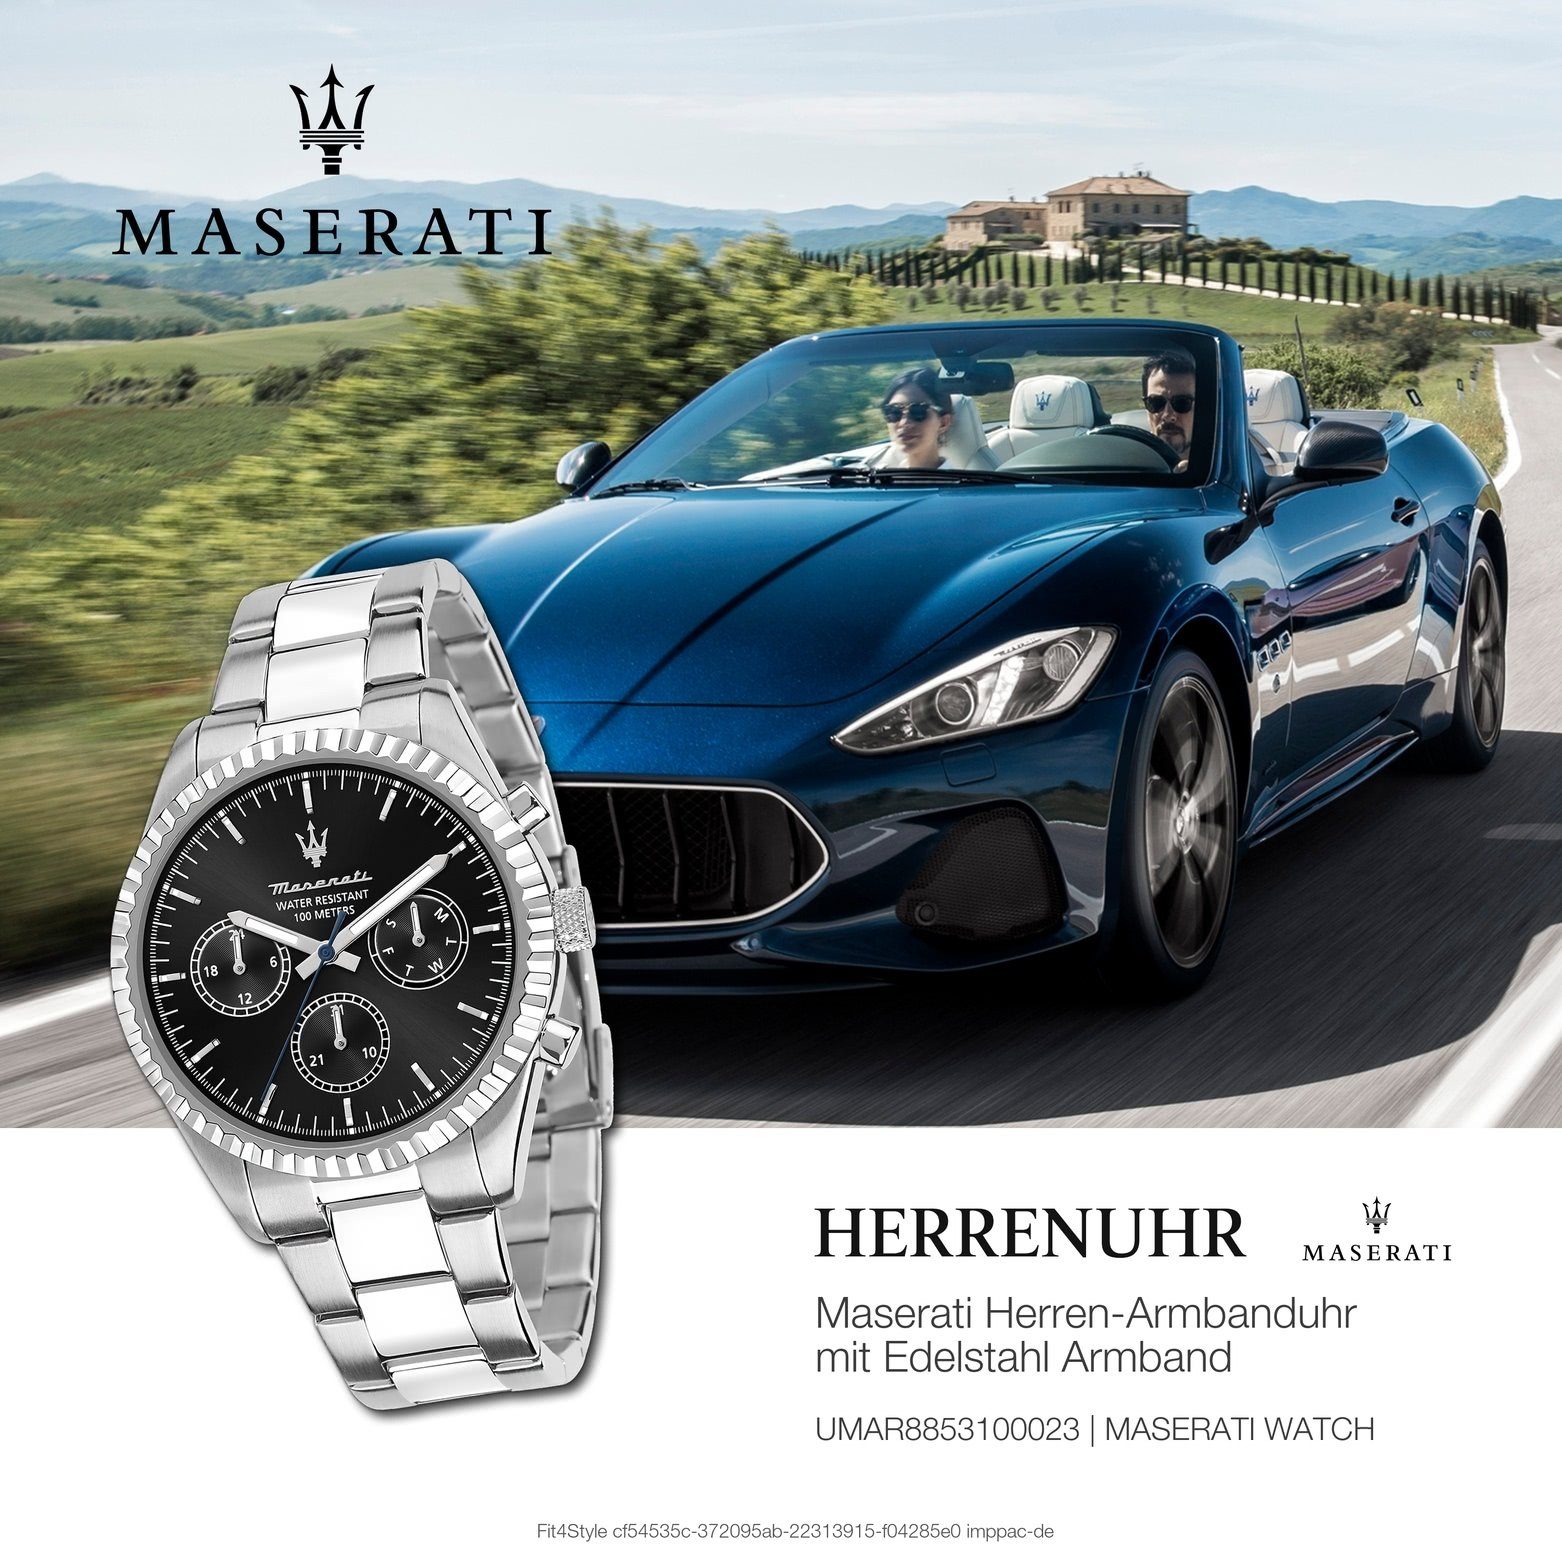 MASERATI Multifunktionsuhr Maserati Herrenuhr COMPETIZIONE, Made-In groß silber Italy rund, Herrenuhr (ca. schwarz, 51,5x43mm) Edelstahlarmband